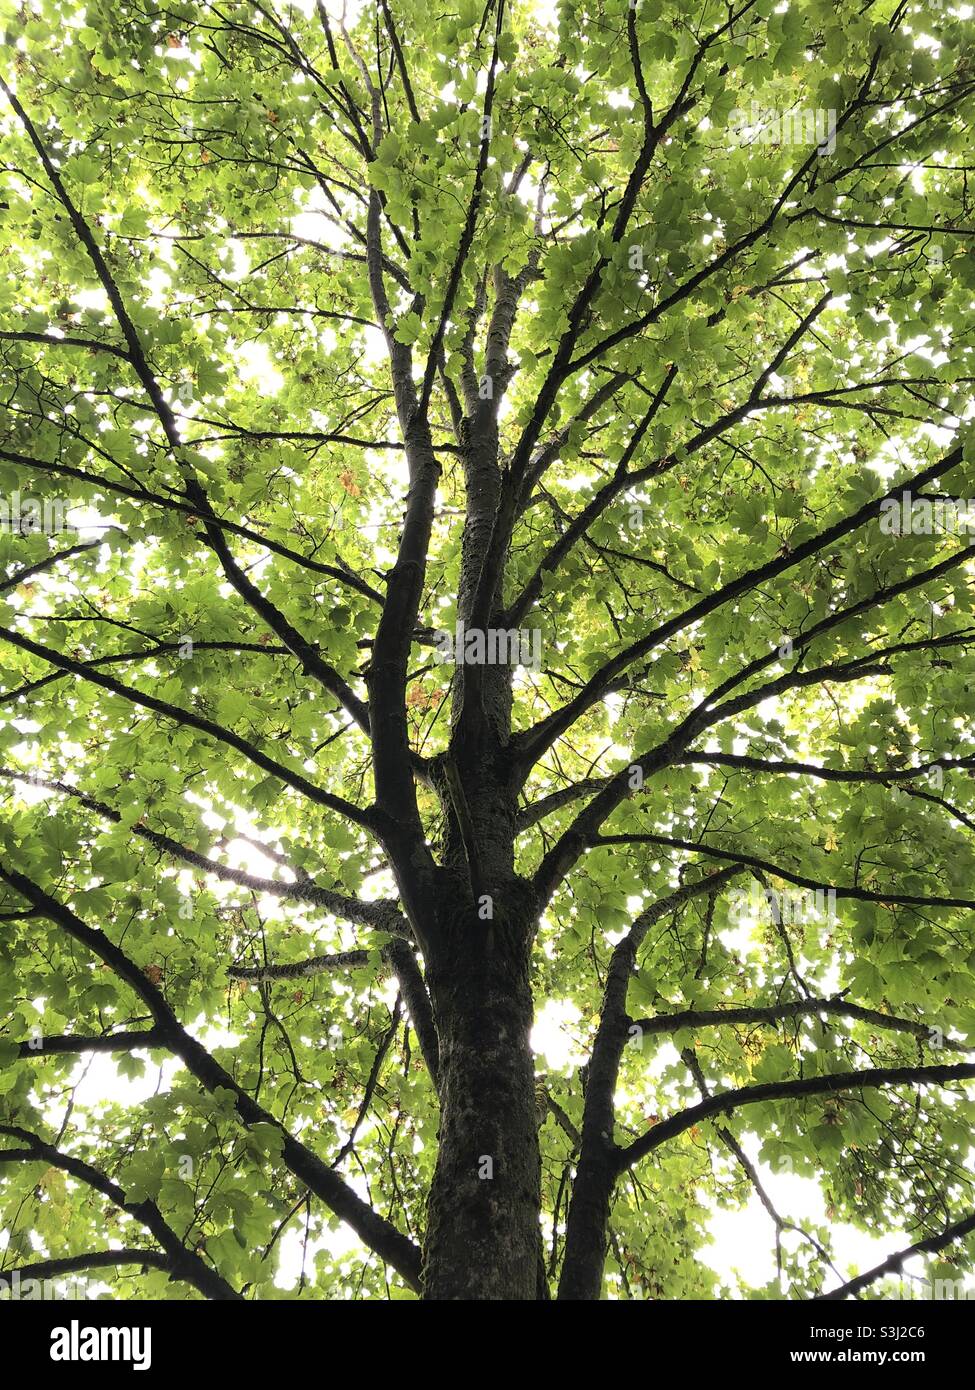 Acero albero, Acer, verde fogliame e rami in una foresta Foto Stock